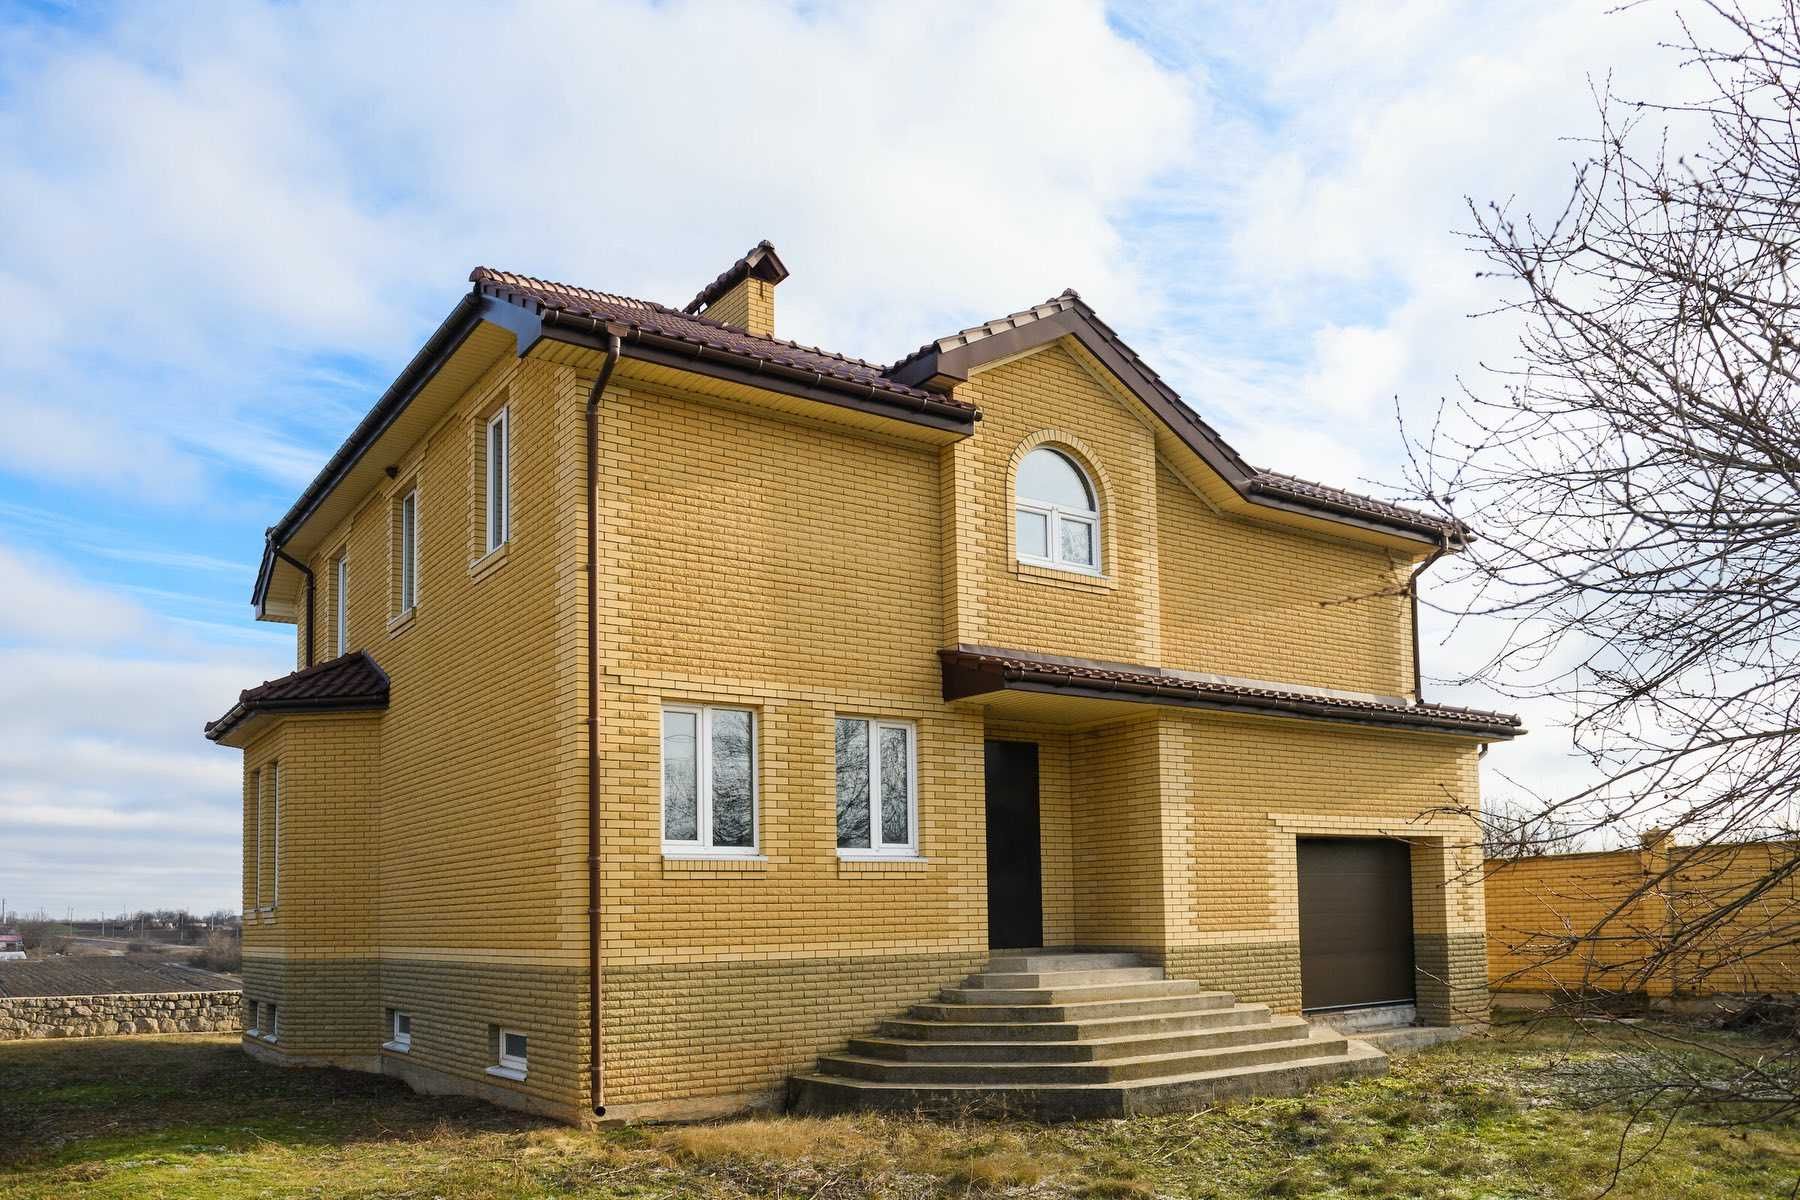 Продам новий будинок на березі річки в 35 кілометрах від Дніпра